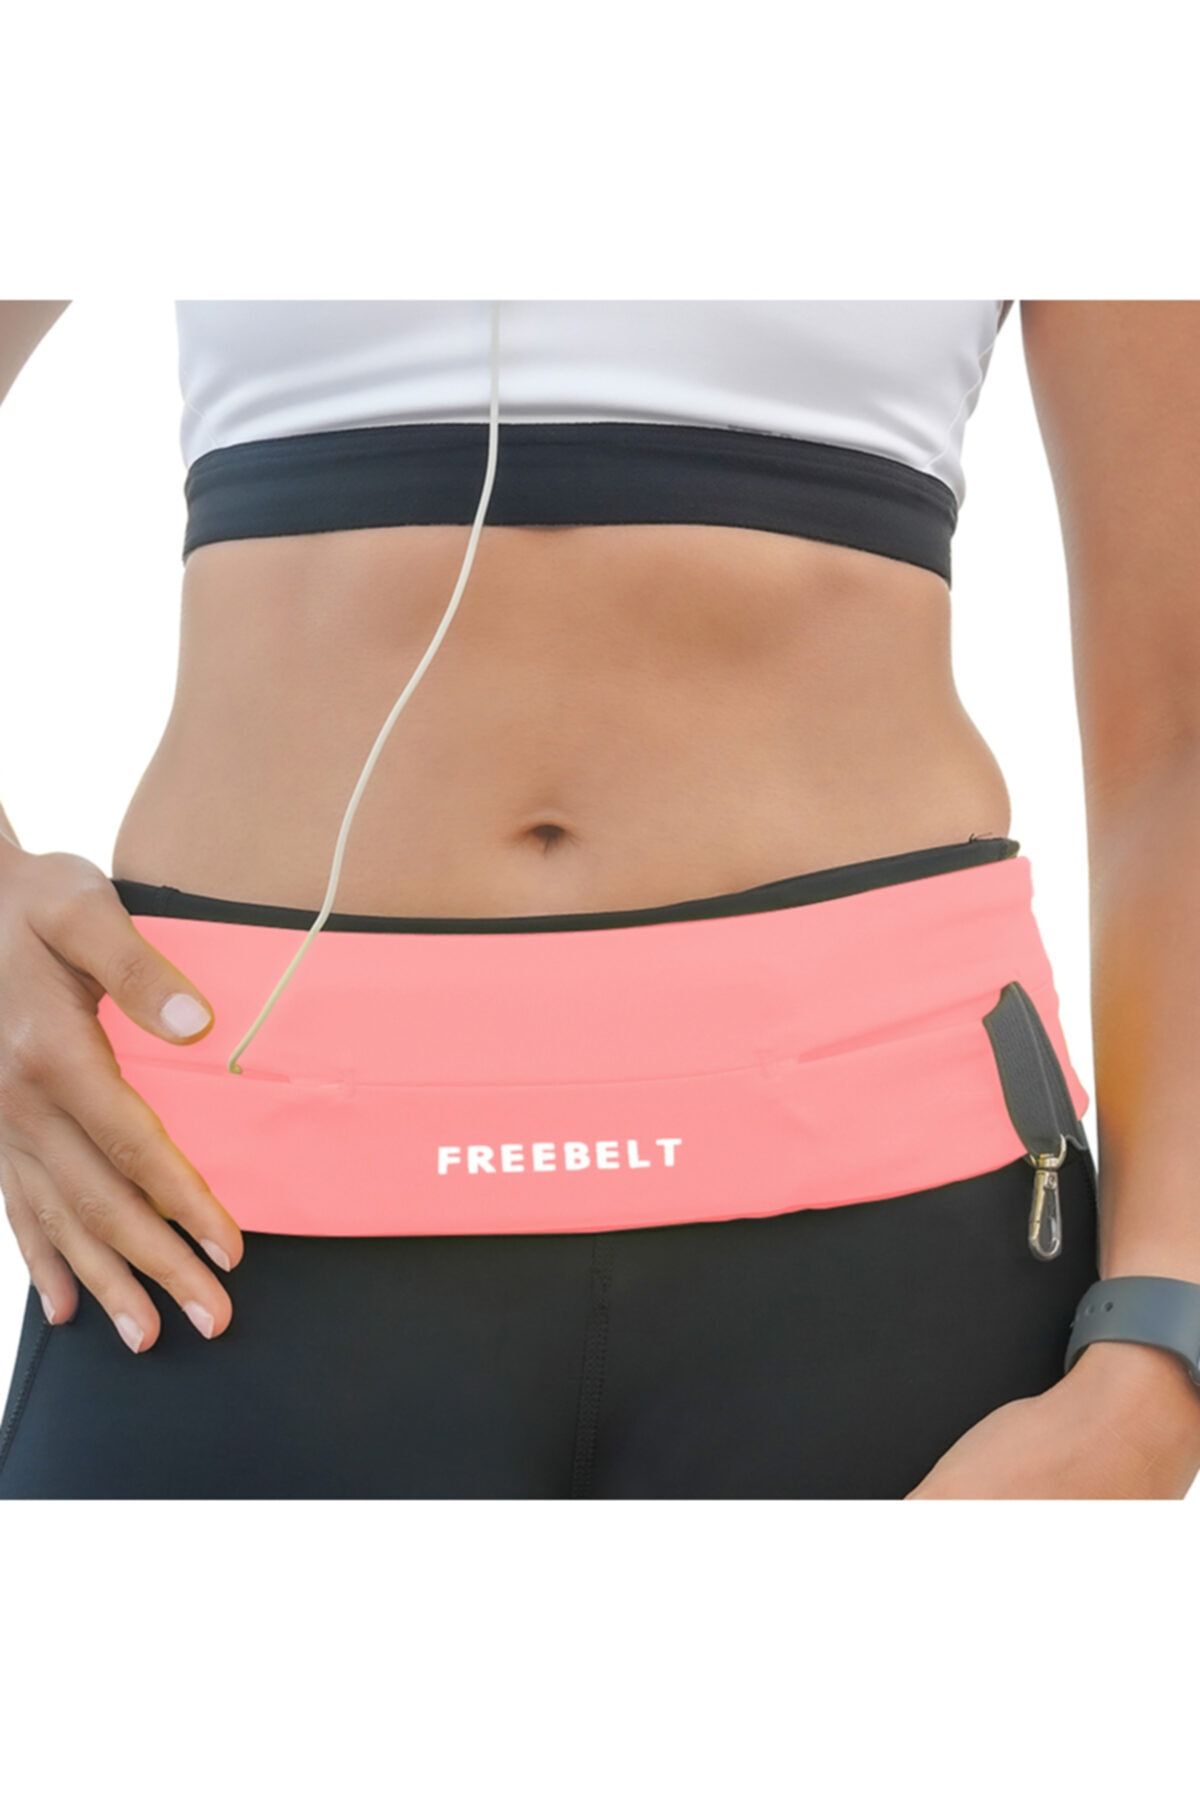 Freebelt Soft Pembe Yeni Nesil Spor Bel Çantası Koşu ve Fitness Kemeri